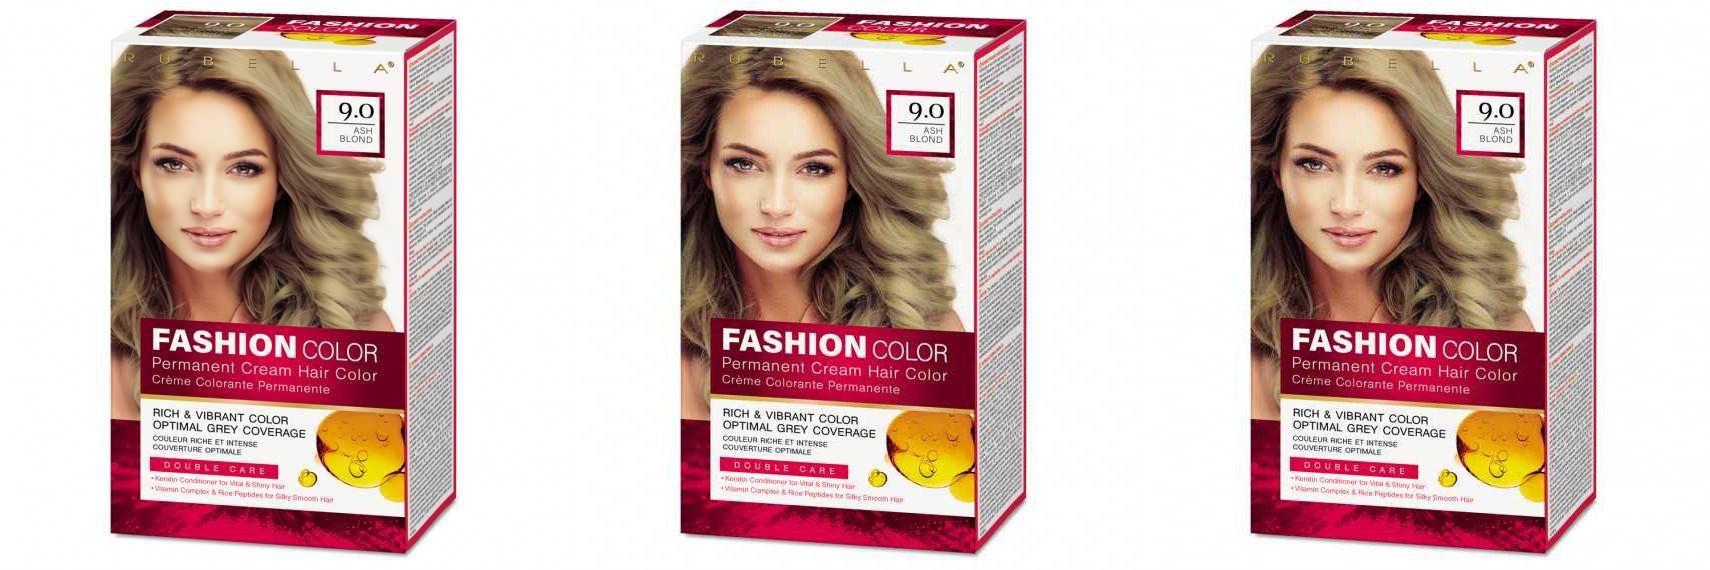 Краска для волос Rubella, Ash Blond, Тон 7.53 Пепельно-русый, 50 мл, 3 шт стойкая крем краска для волос rubella fashion color 7 53 карамельный блонд 50 мл 2 шт